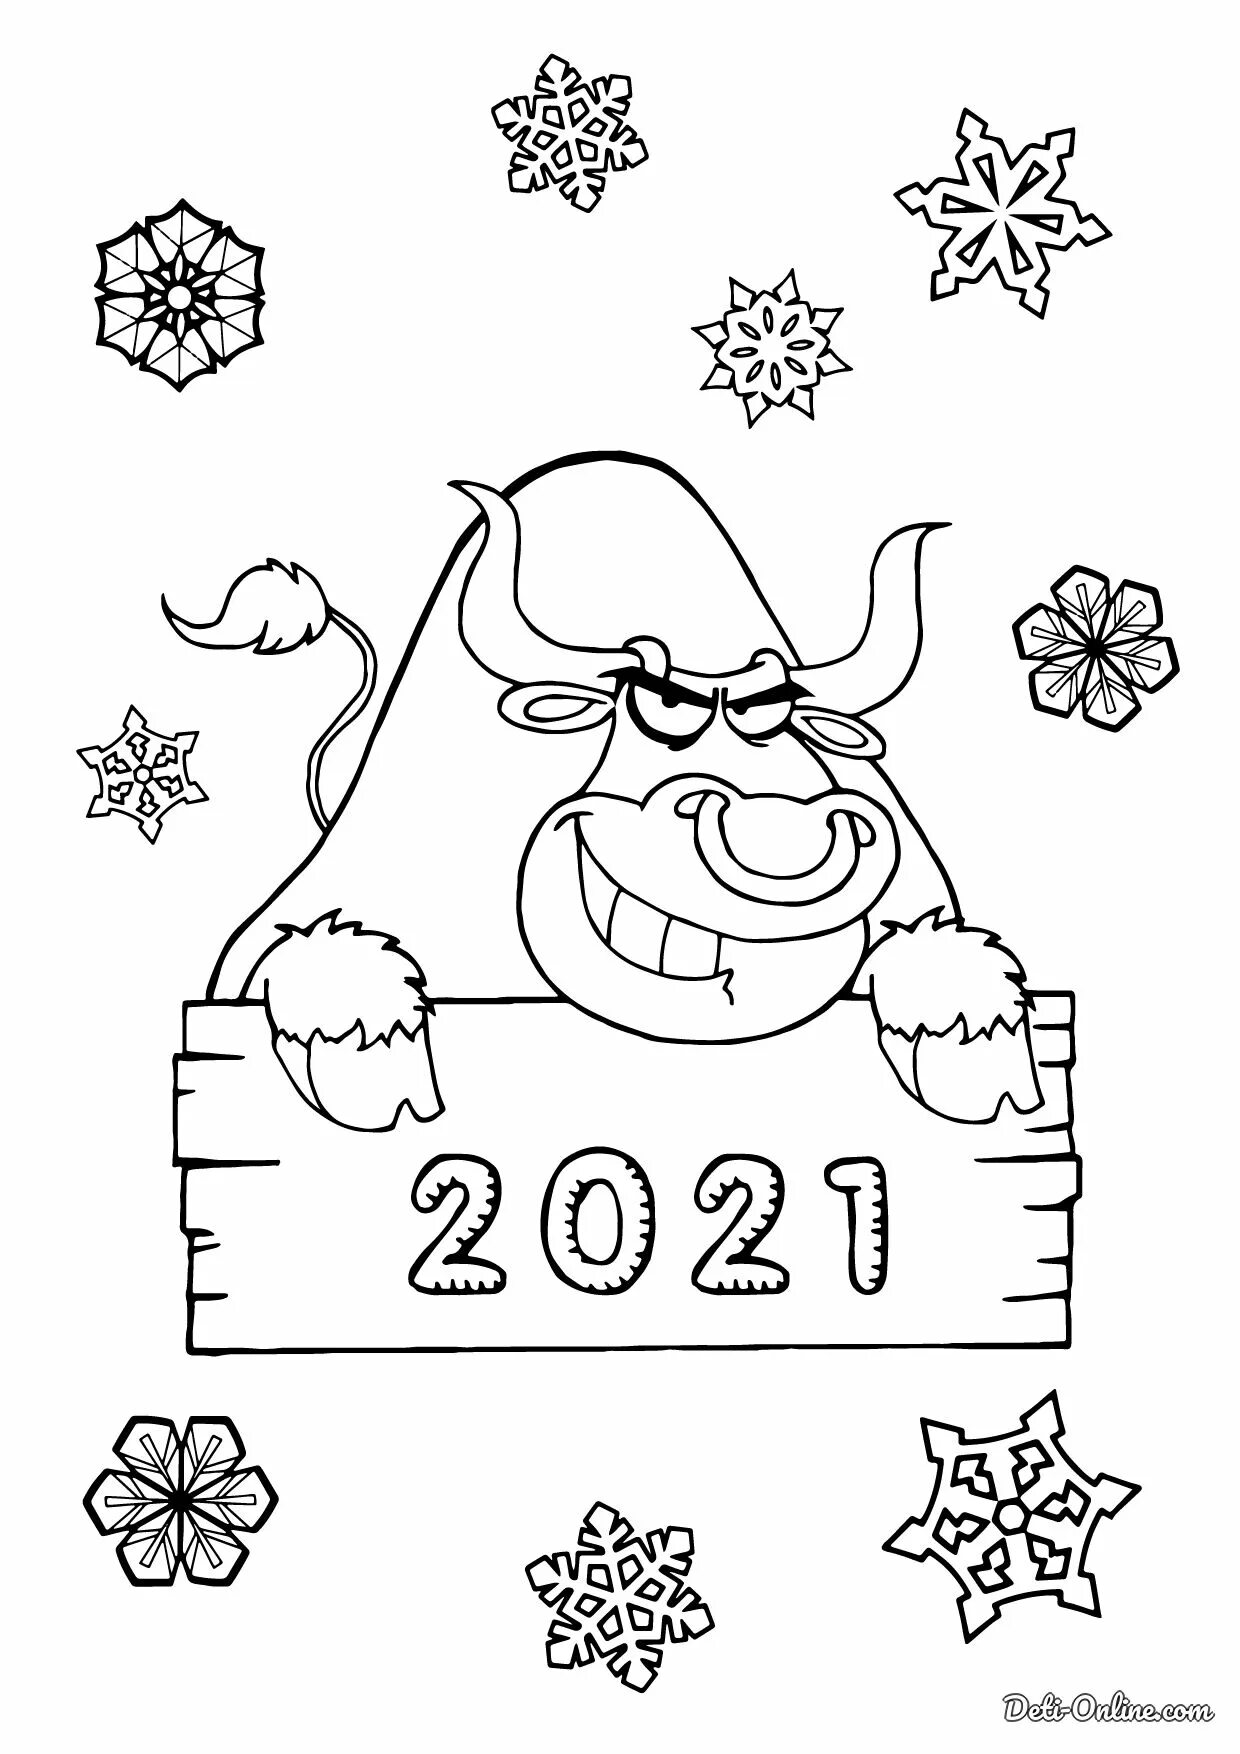 С новым 2024 распечатать. Новогодние раскраски 2021. Рисунки к новому году 2021. Рисунки к новому году 2021 для детей легкие. Новогодние картинки раскраски 2021.